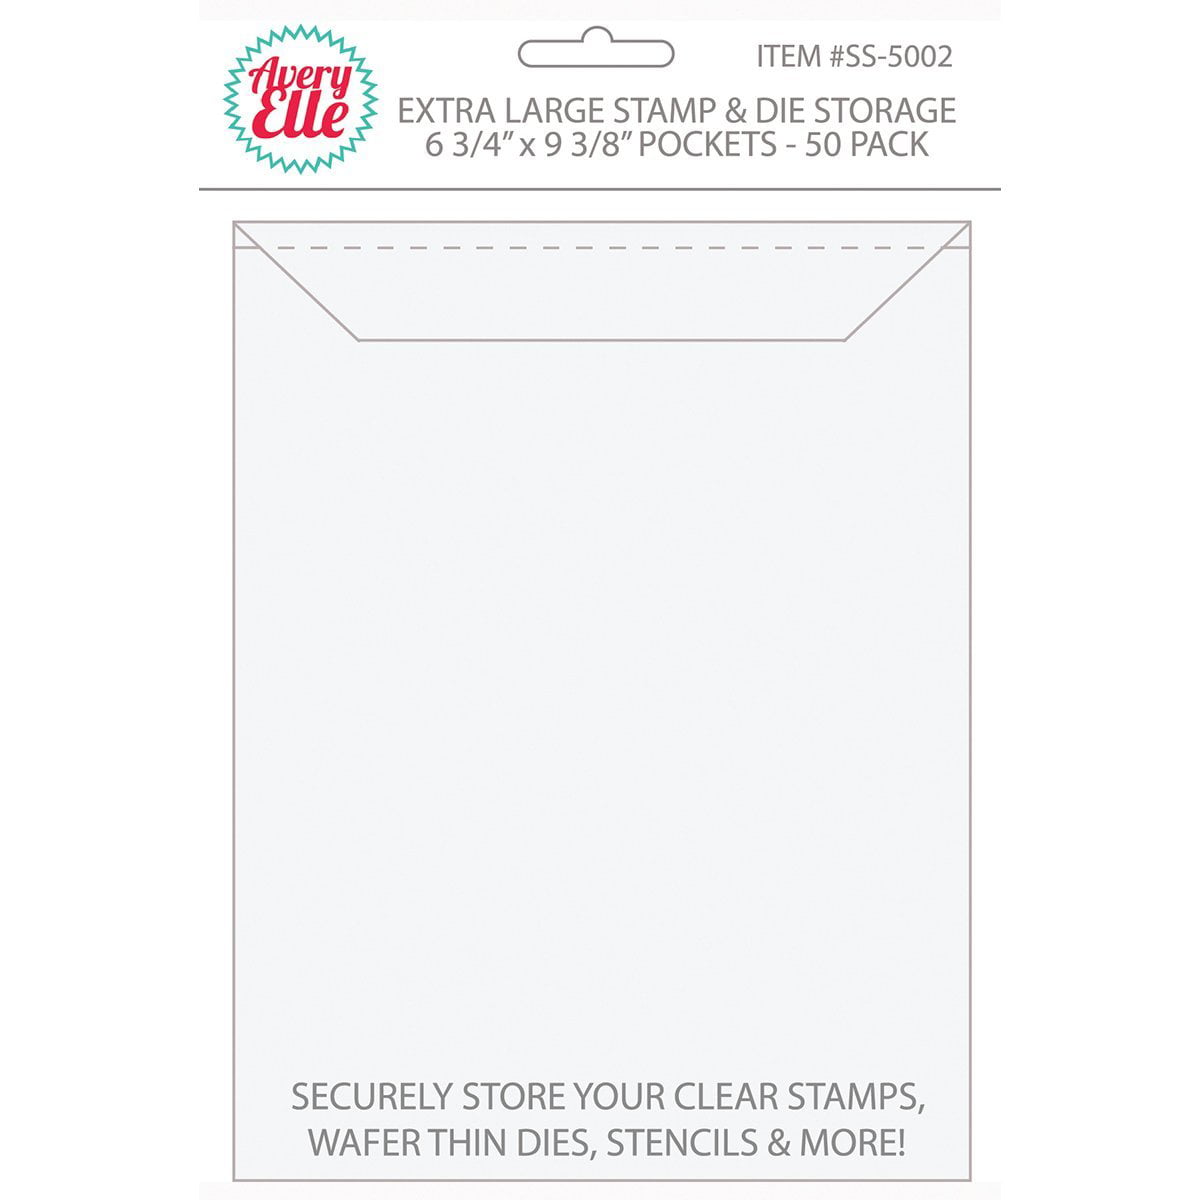 OOTSR 21 Pieces Clear Stamp and Die Storage Bag 7x 5 Inch Scrapbooking Die Storage Plastic Storage Pockets for Cutting Dies Stencil Album Stamp Organization